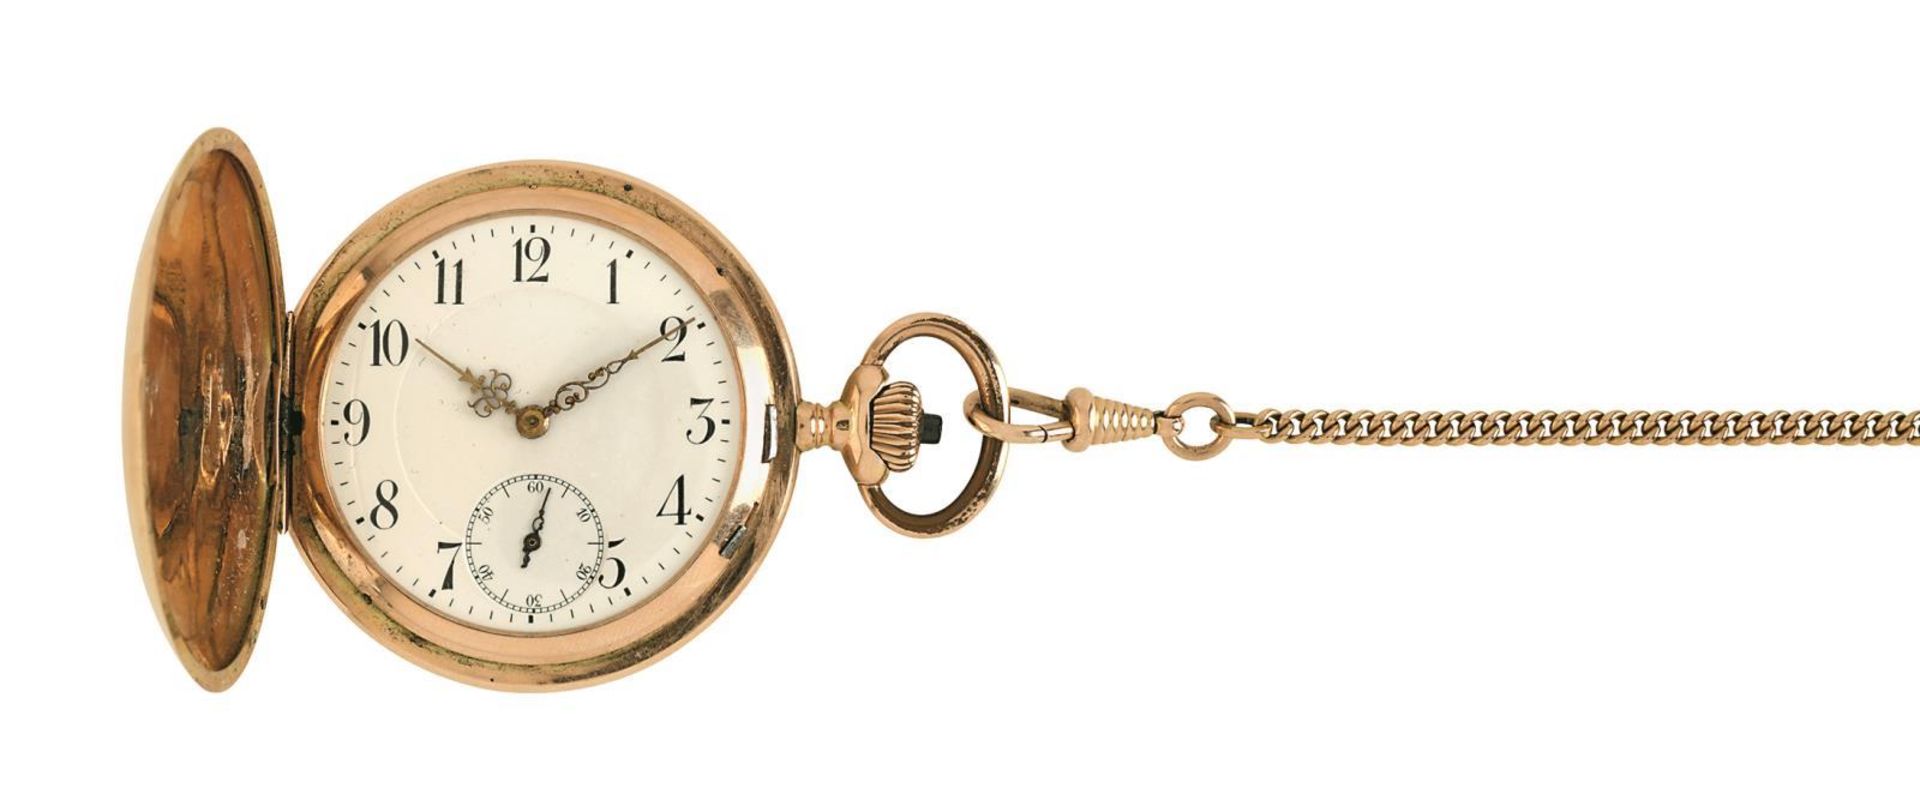 Savonette mit Uhrenkette. Um 1900 | 14 K RG. Marken: 585 u.a.